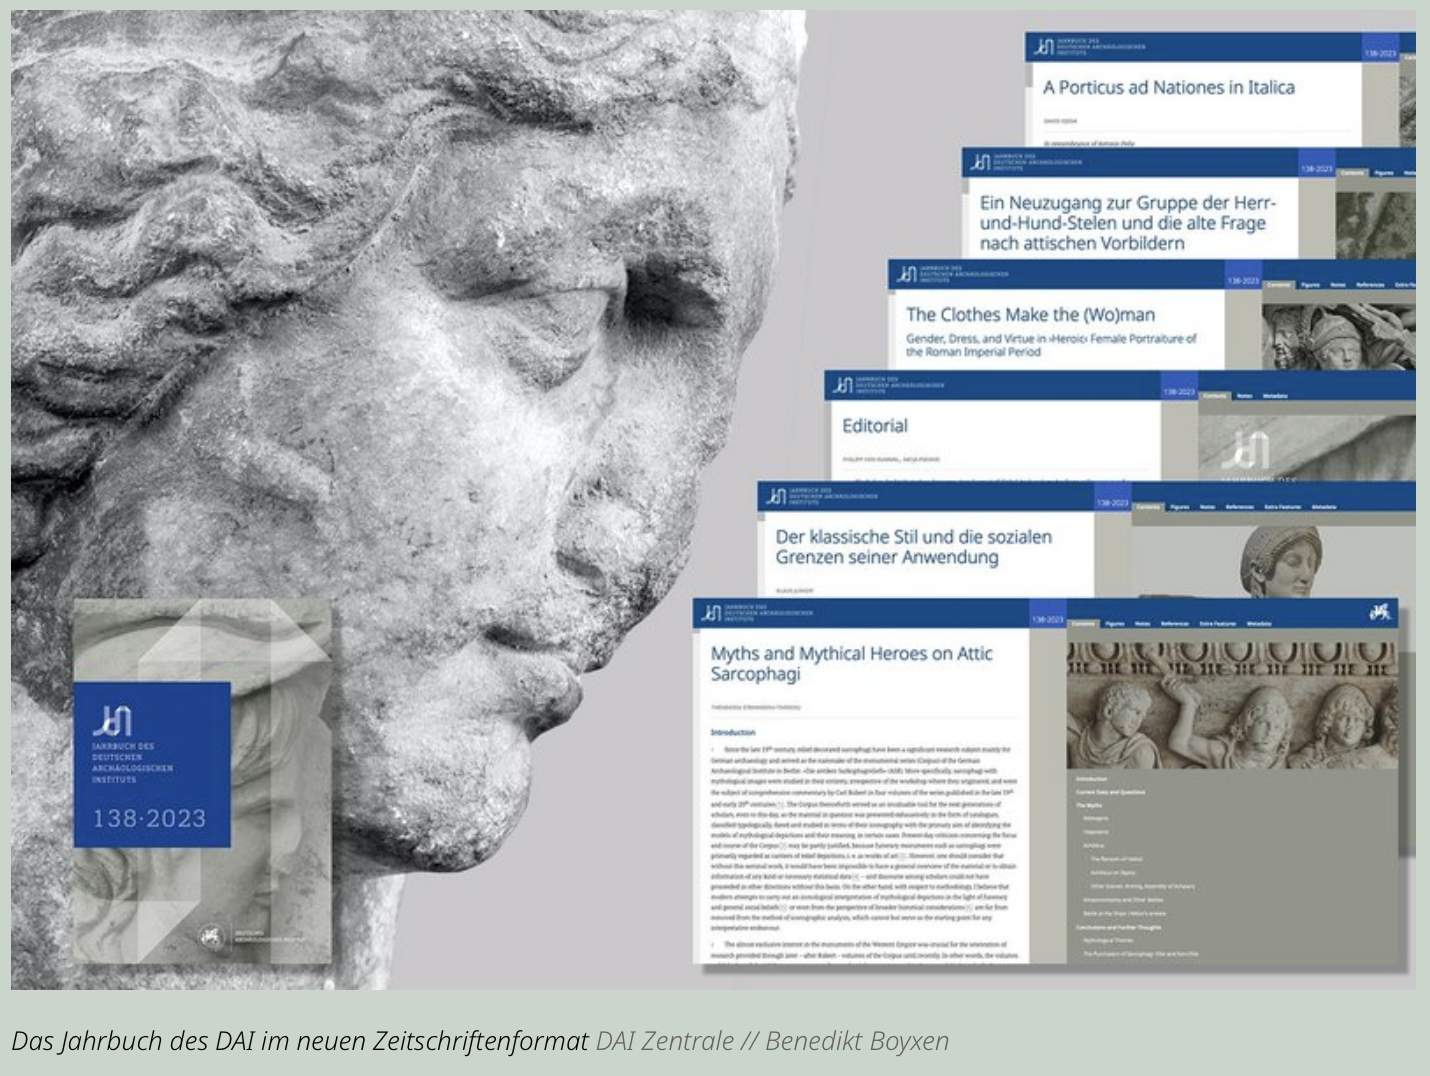 Bildmontage mit Cover des JdI 138/20023 und einer Auswahl Artikelansichten im digitalen Format.